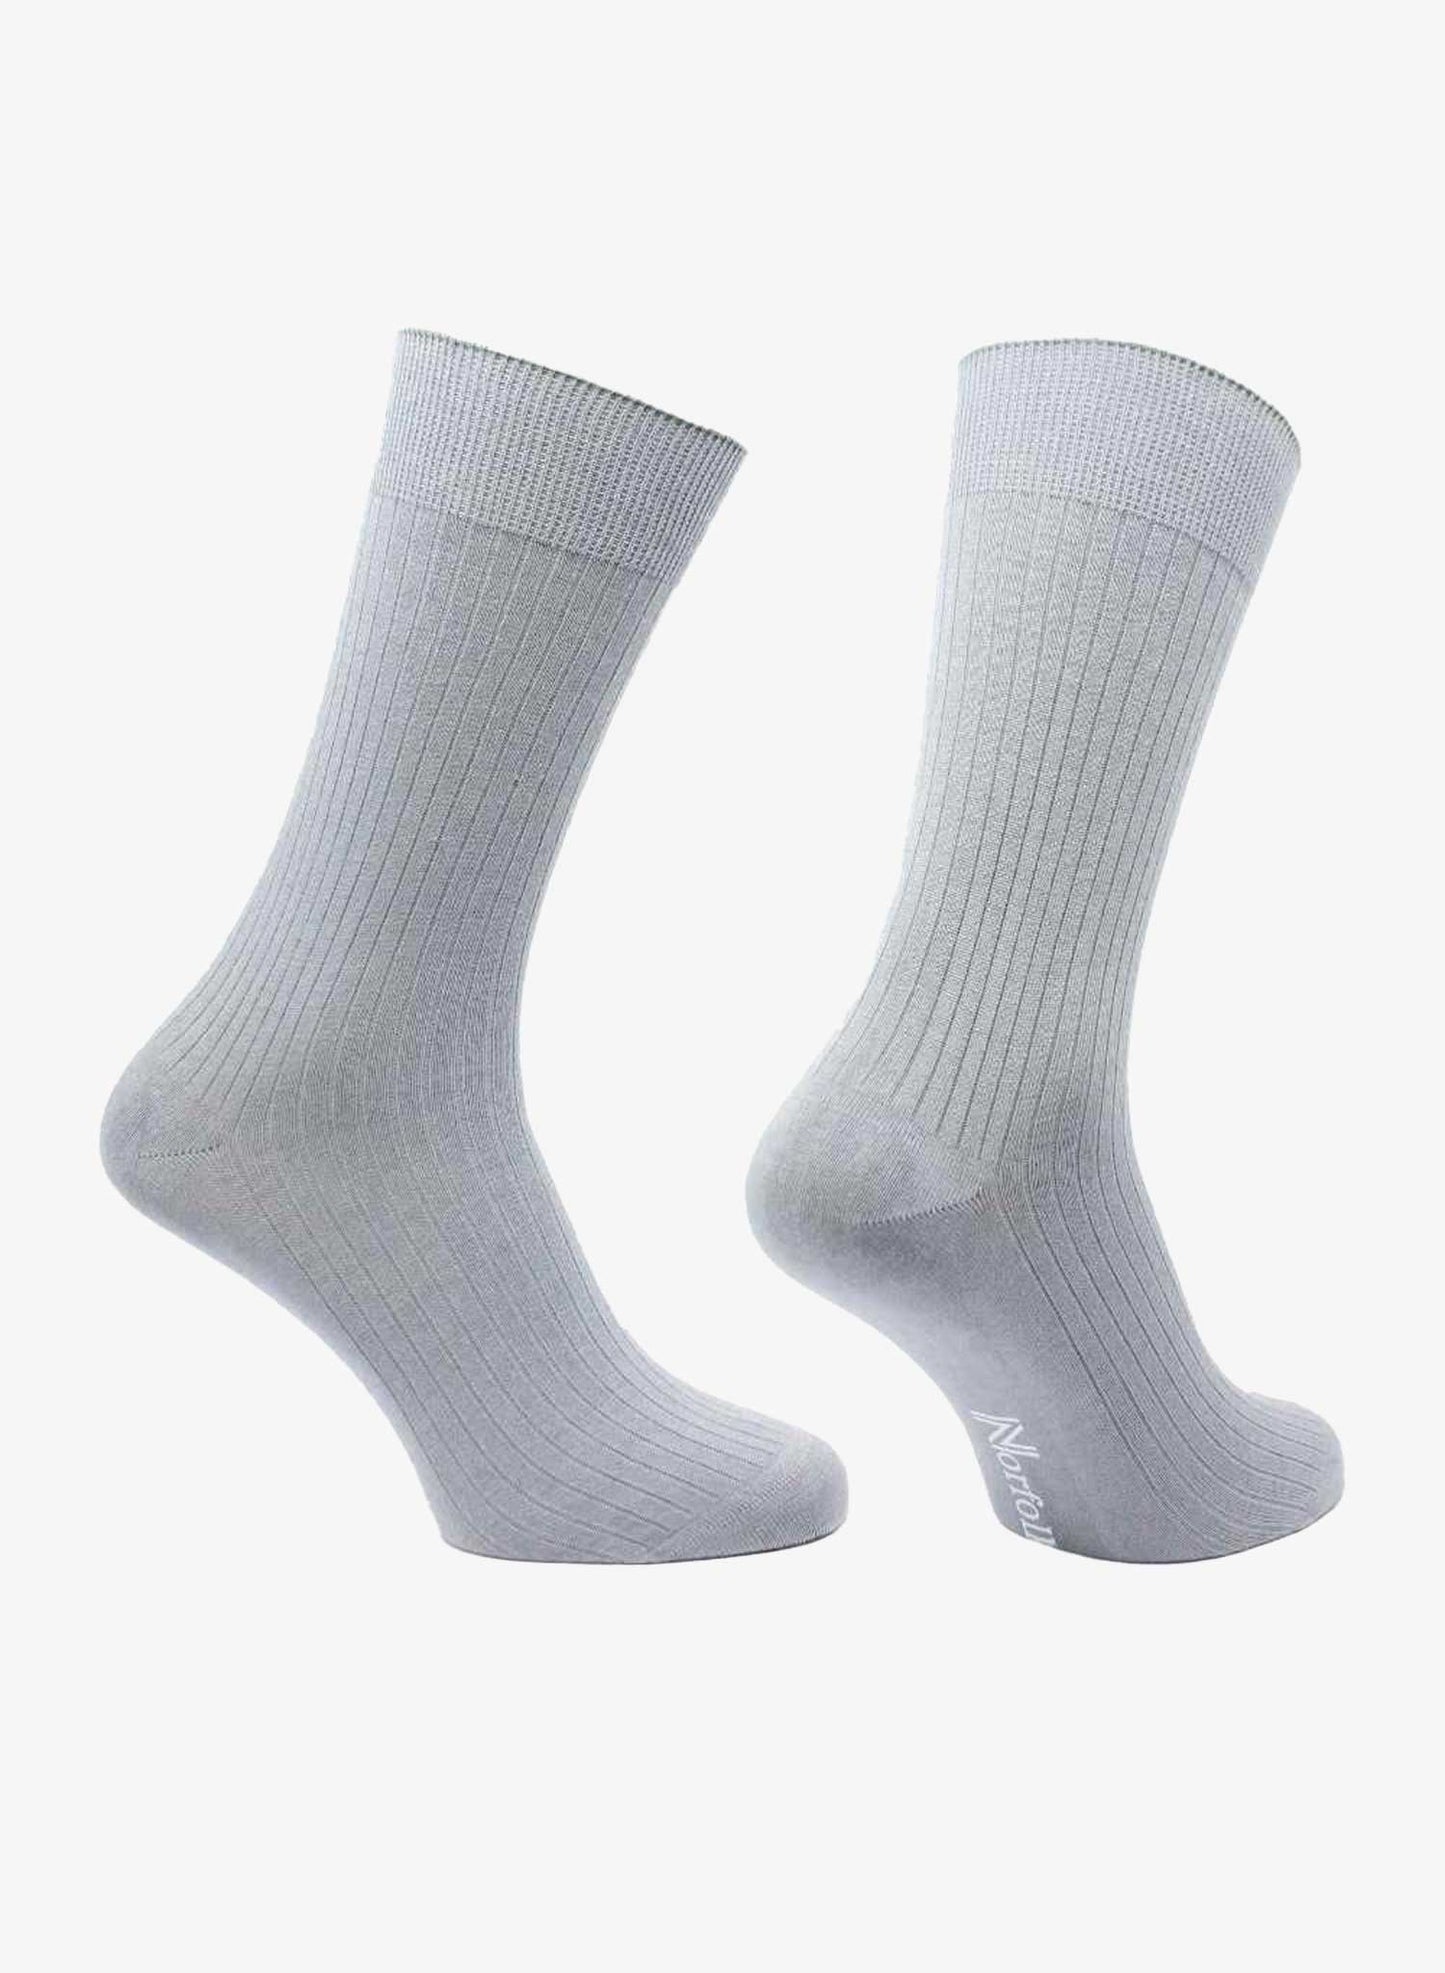 Norfolk Socks Monaco - Grey